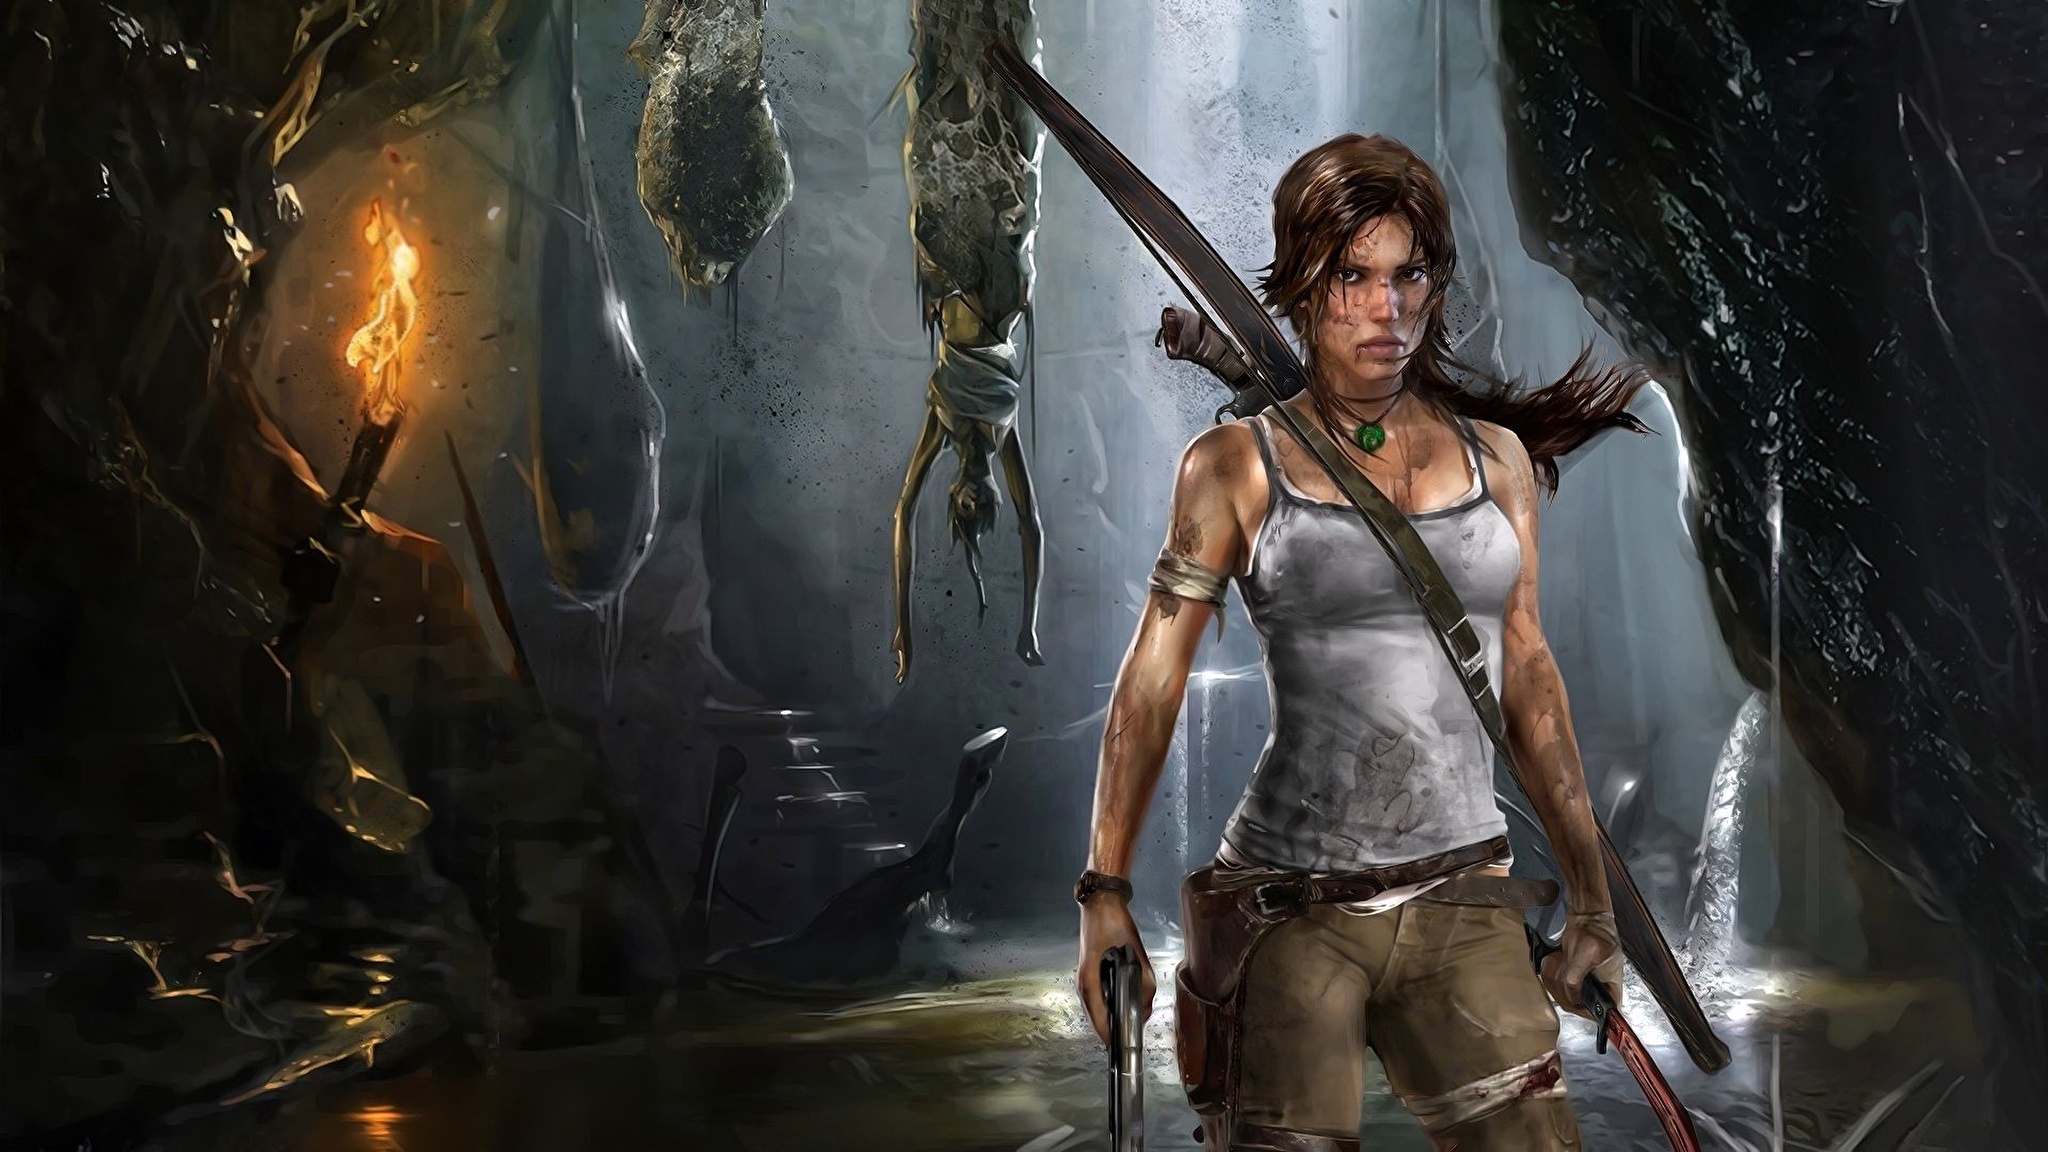 Обои на рабочий стол игры 1920х1080. Lara Croft Tomb Raider игра 2013.